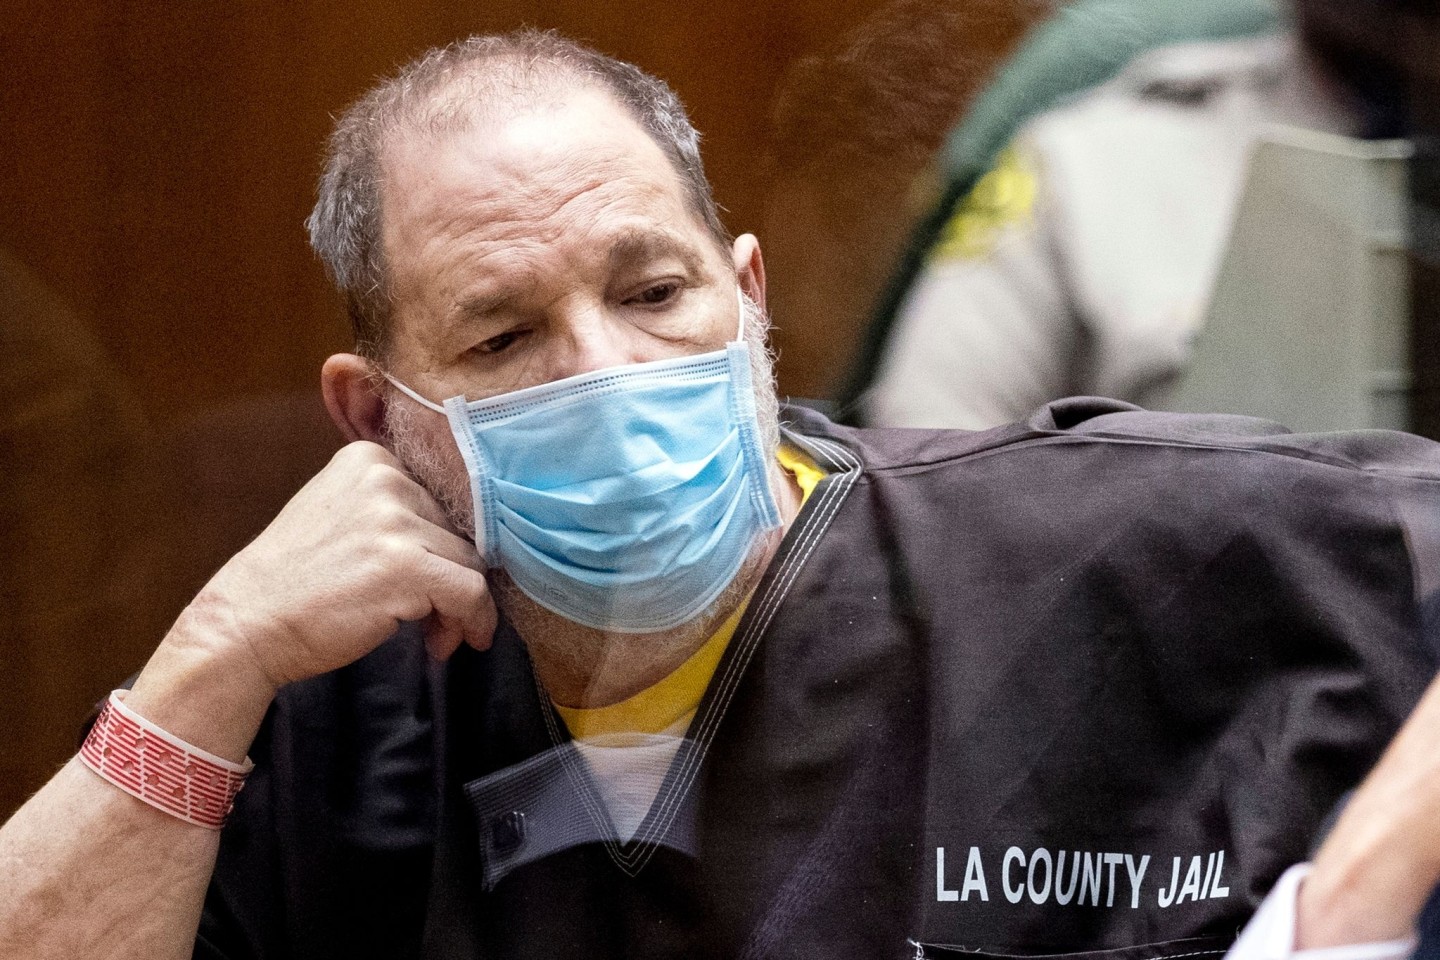 Harvey Weinstein, ehemaliger Filmproduzent aus den USA, bei einer Anhörung vor Gericht in Los Angeles. (Archivbild)